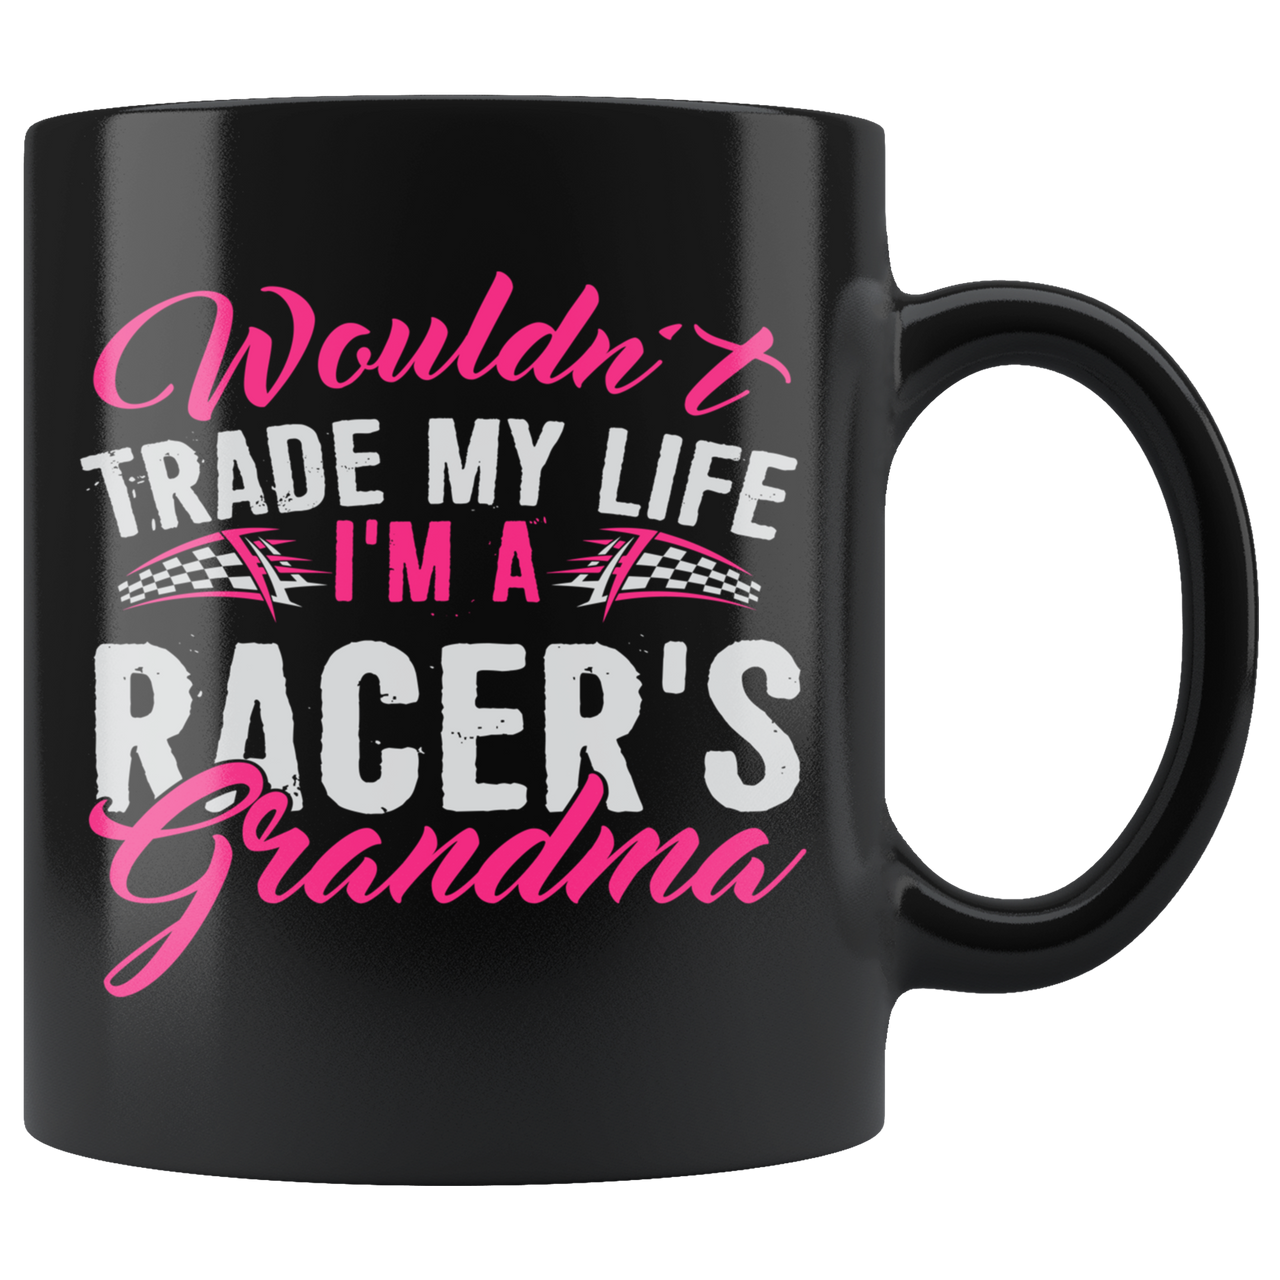 Wouldn't Trade My Life I'm A Racer's Grandma Mug!